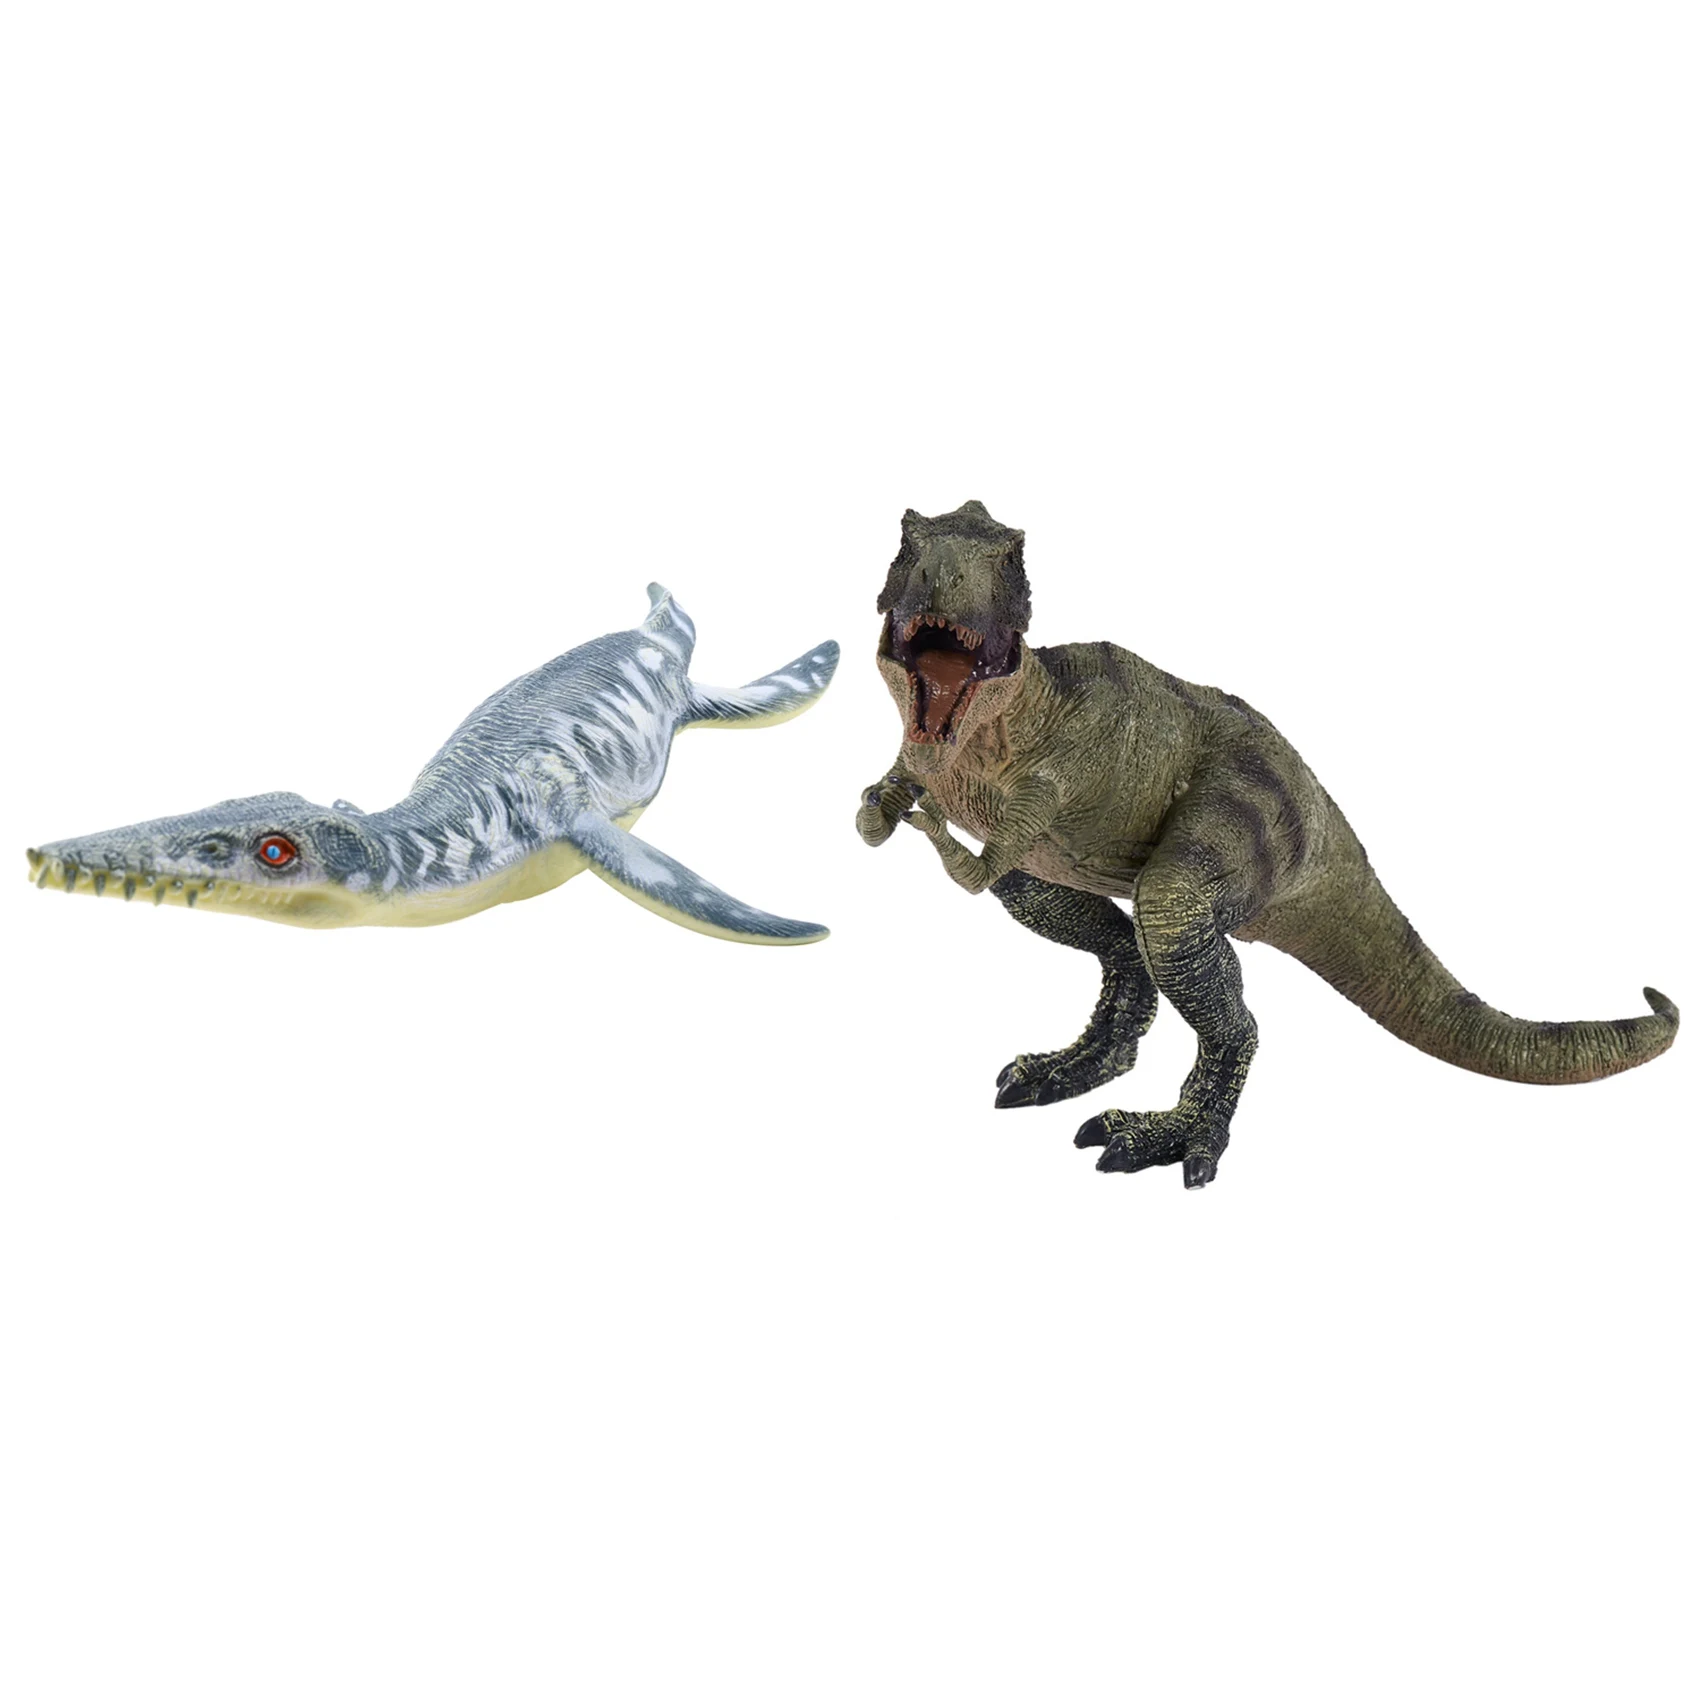 

Liopleurodon детская игрушка модель и большой размер Юрского периода Дикая жизнь Тираннозавр Рекс Динозавр игрушка парк мира модель динозавра